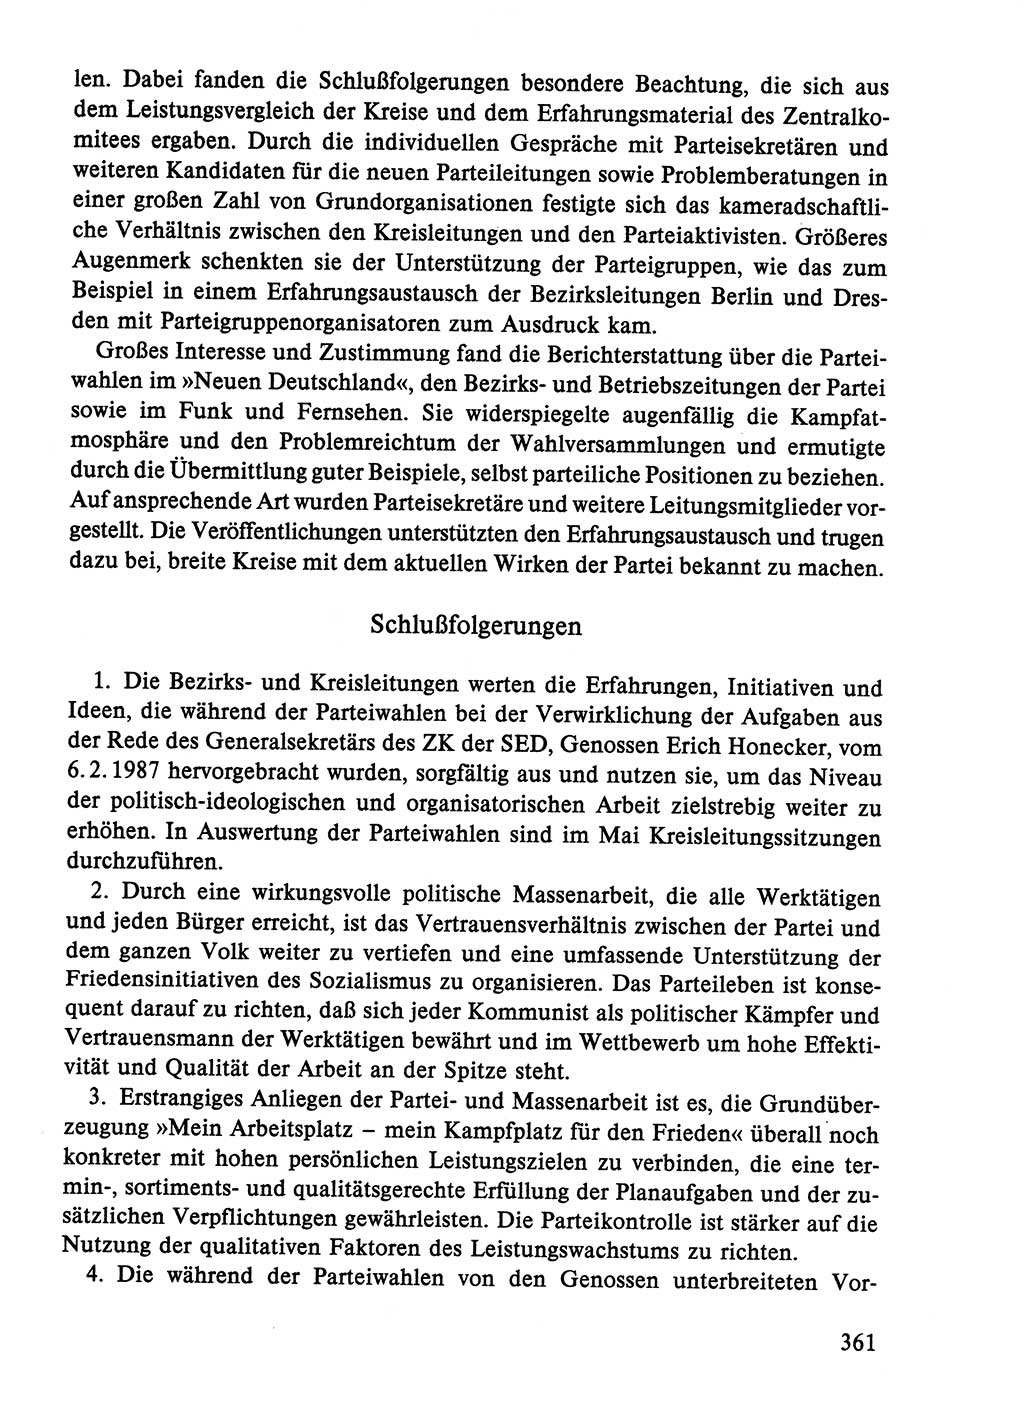 Dokumente der Sozialistischen Einheitspartei Deutschlands (SED) [Deutsche Demokratische Republik (DDR)] 1986-1987, Seite 361 (Dok. SED DDR 1986-1987, S. 361)